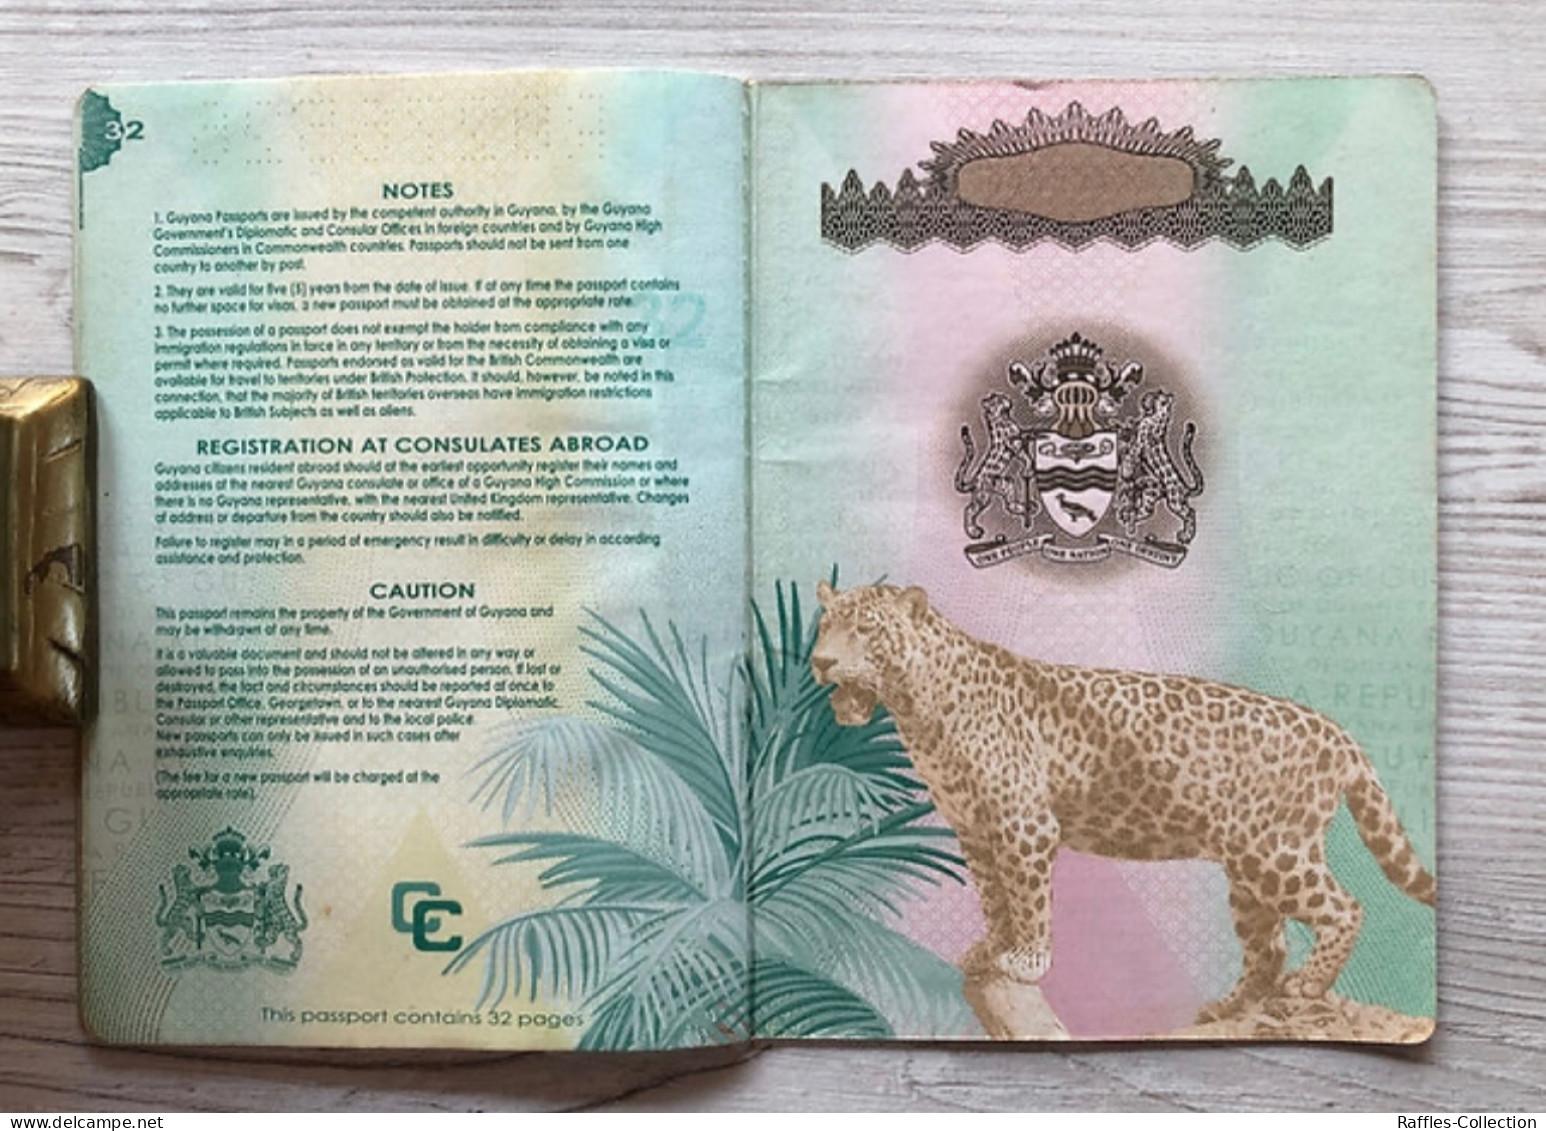 Guyana passport passeport reisepass pasaporte passaporto